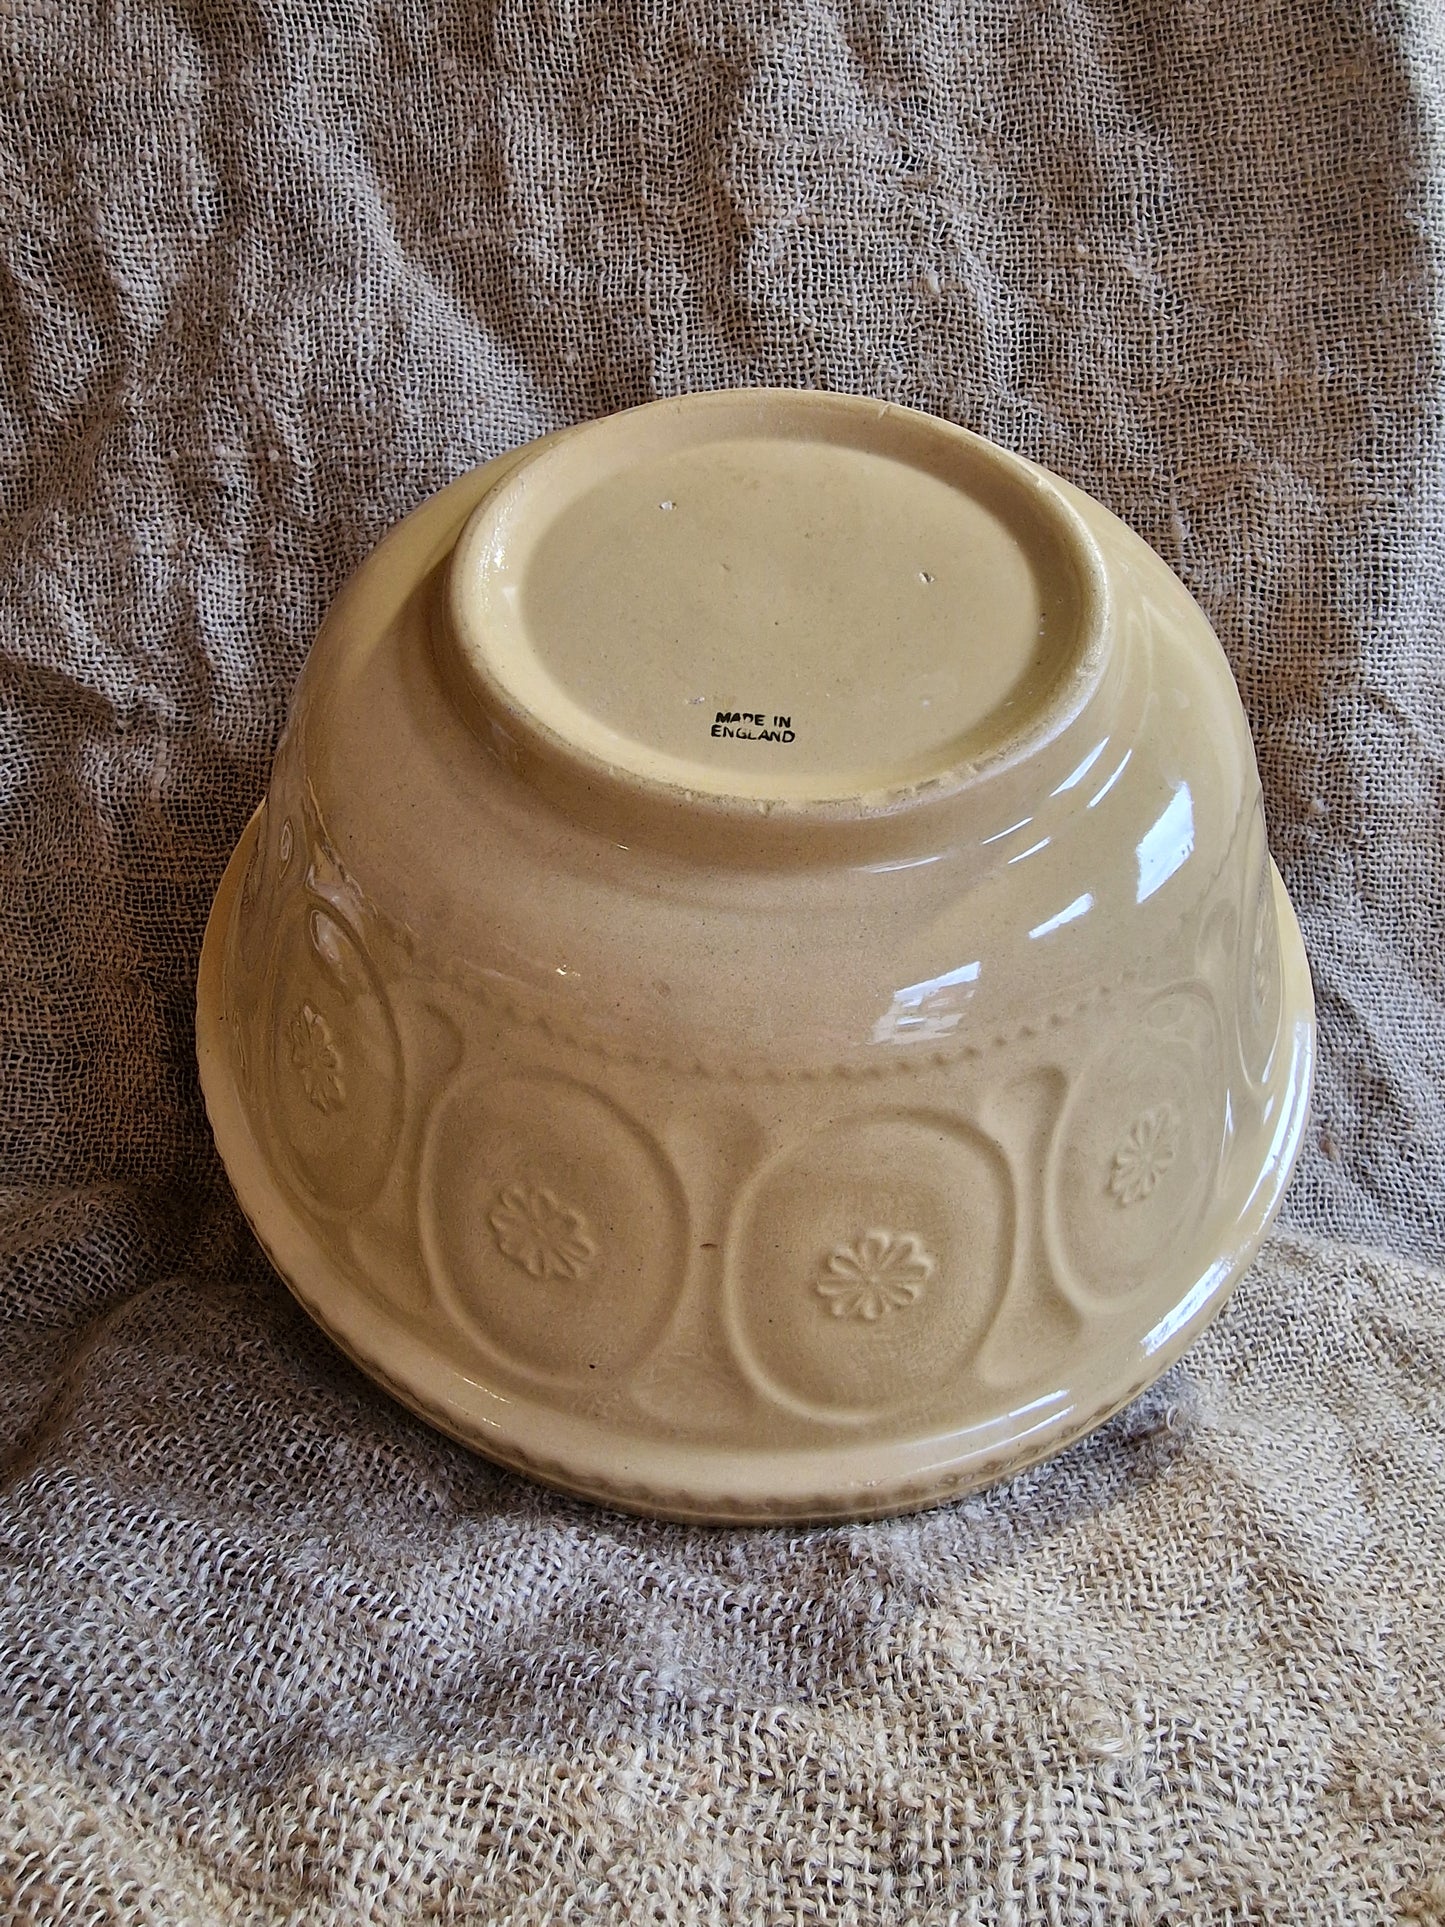 Vintage Mixing Bowl